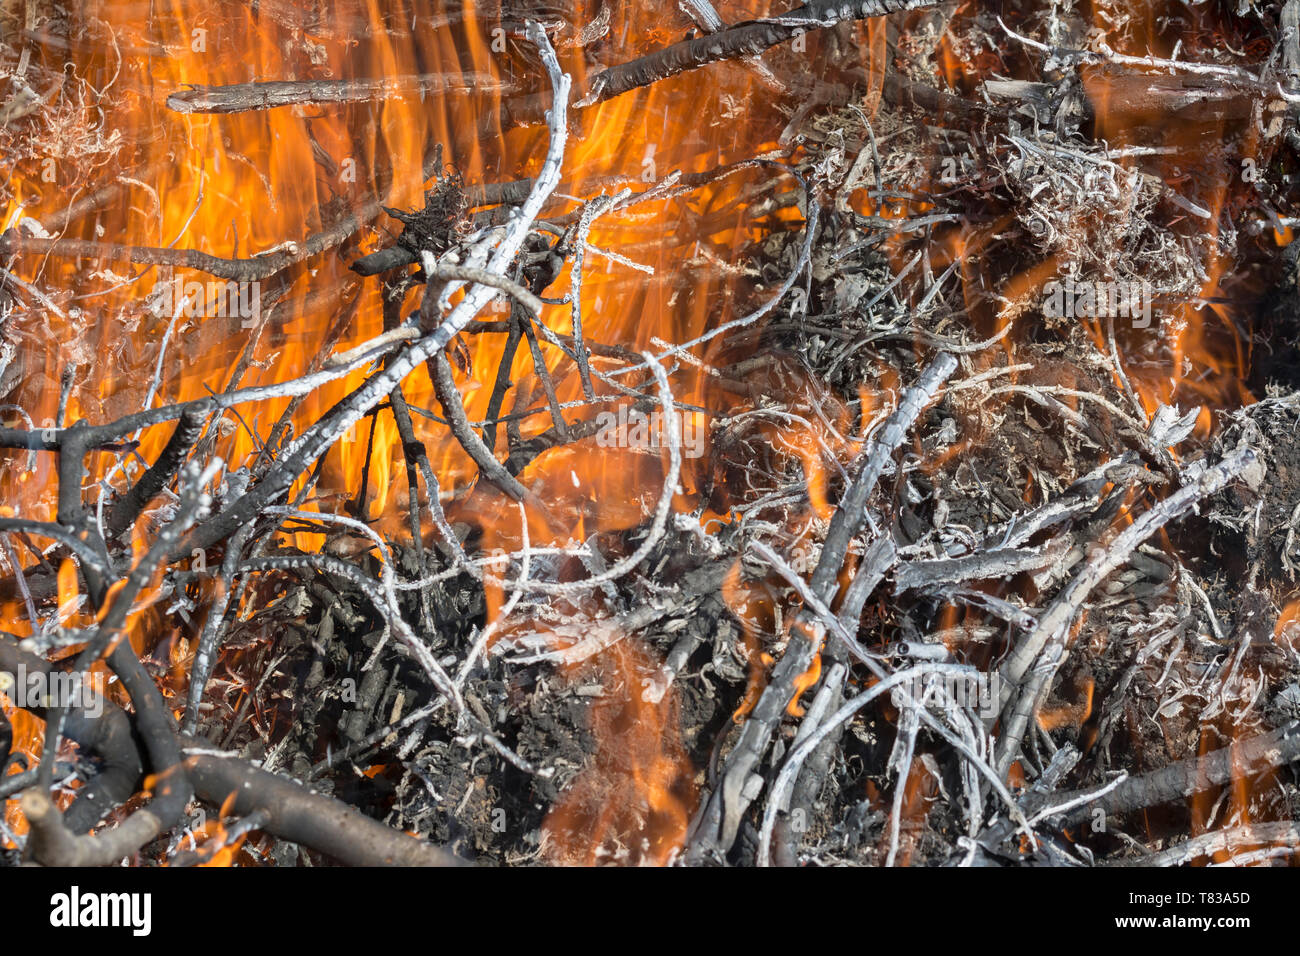 Bush am Feuer im Freien. Brennende trockenes Gras. Feuer und Rauch. Hintergrund konzeptionelle gefährliche Brände und raucht. Stockfoto